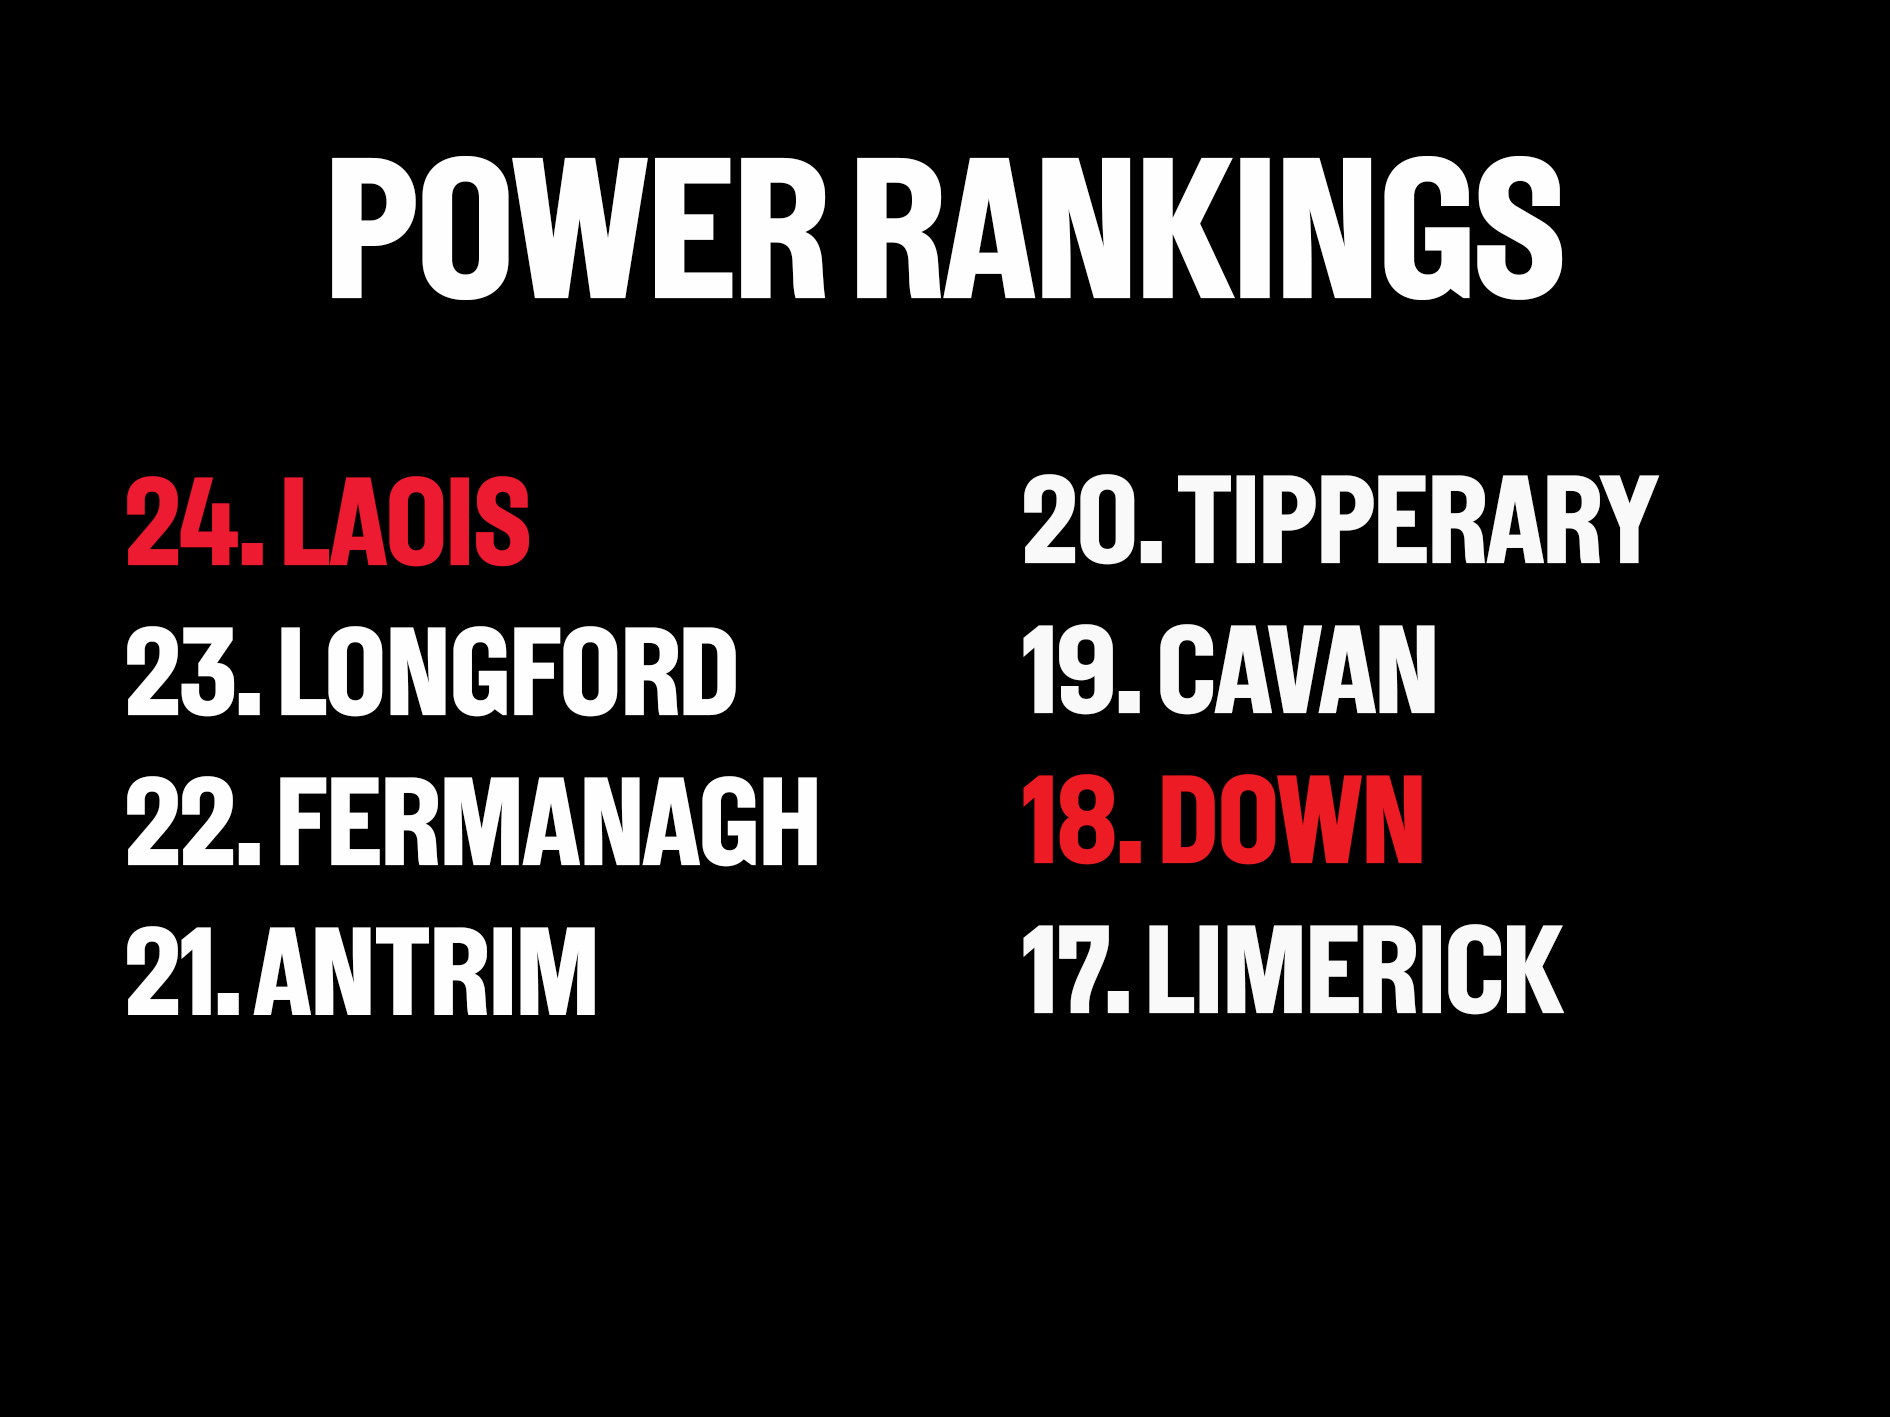 Power rankings